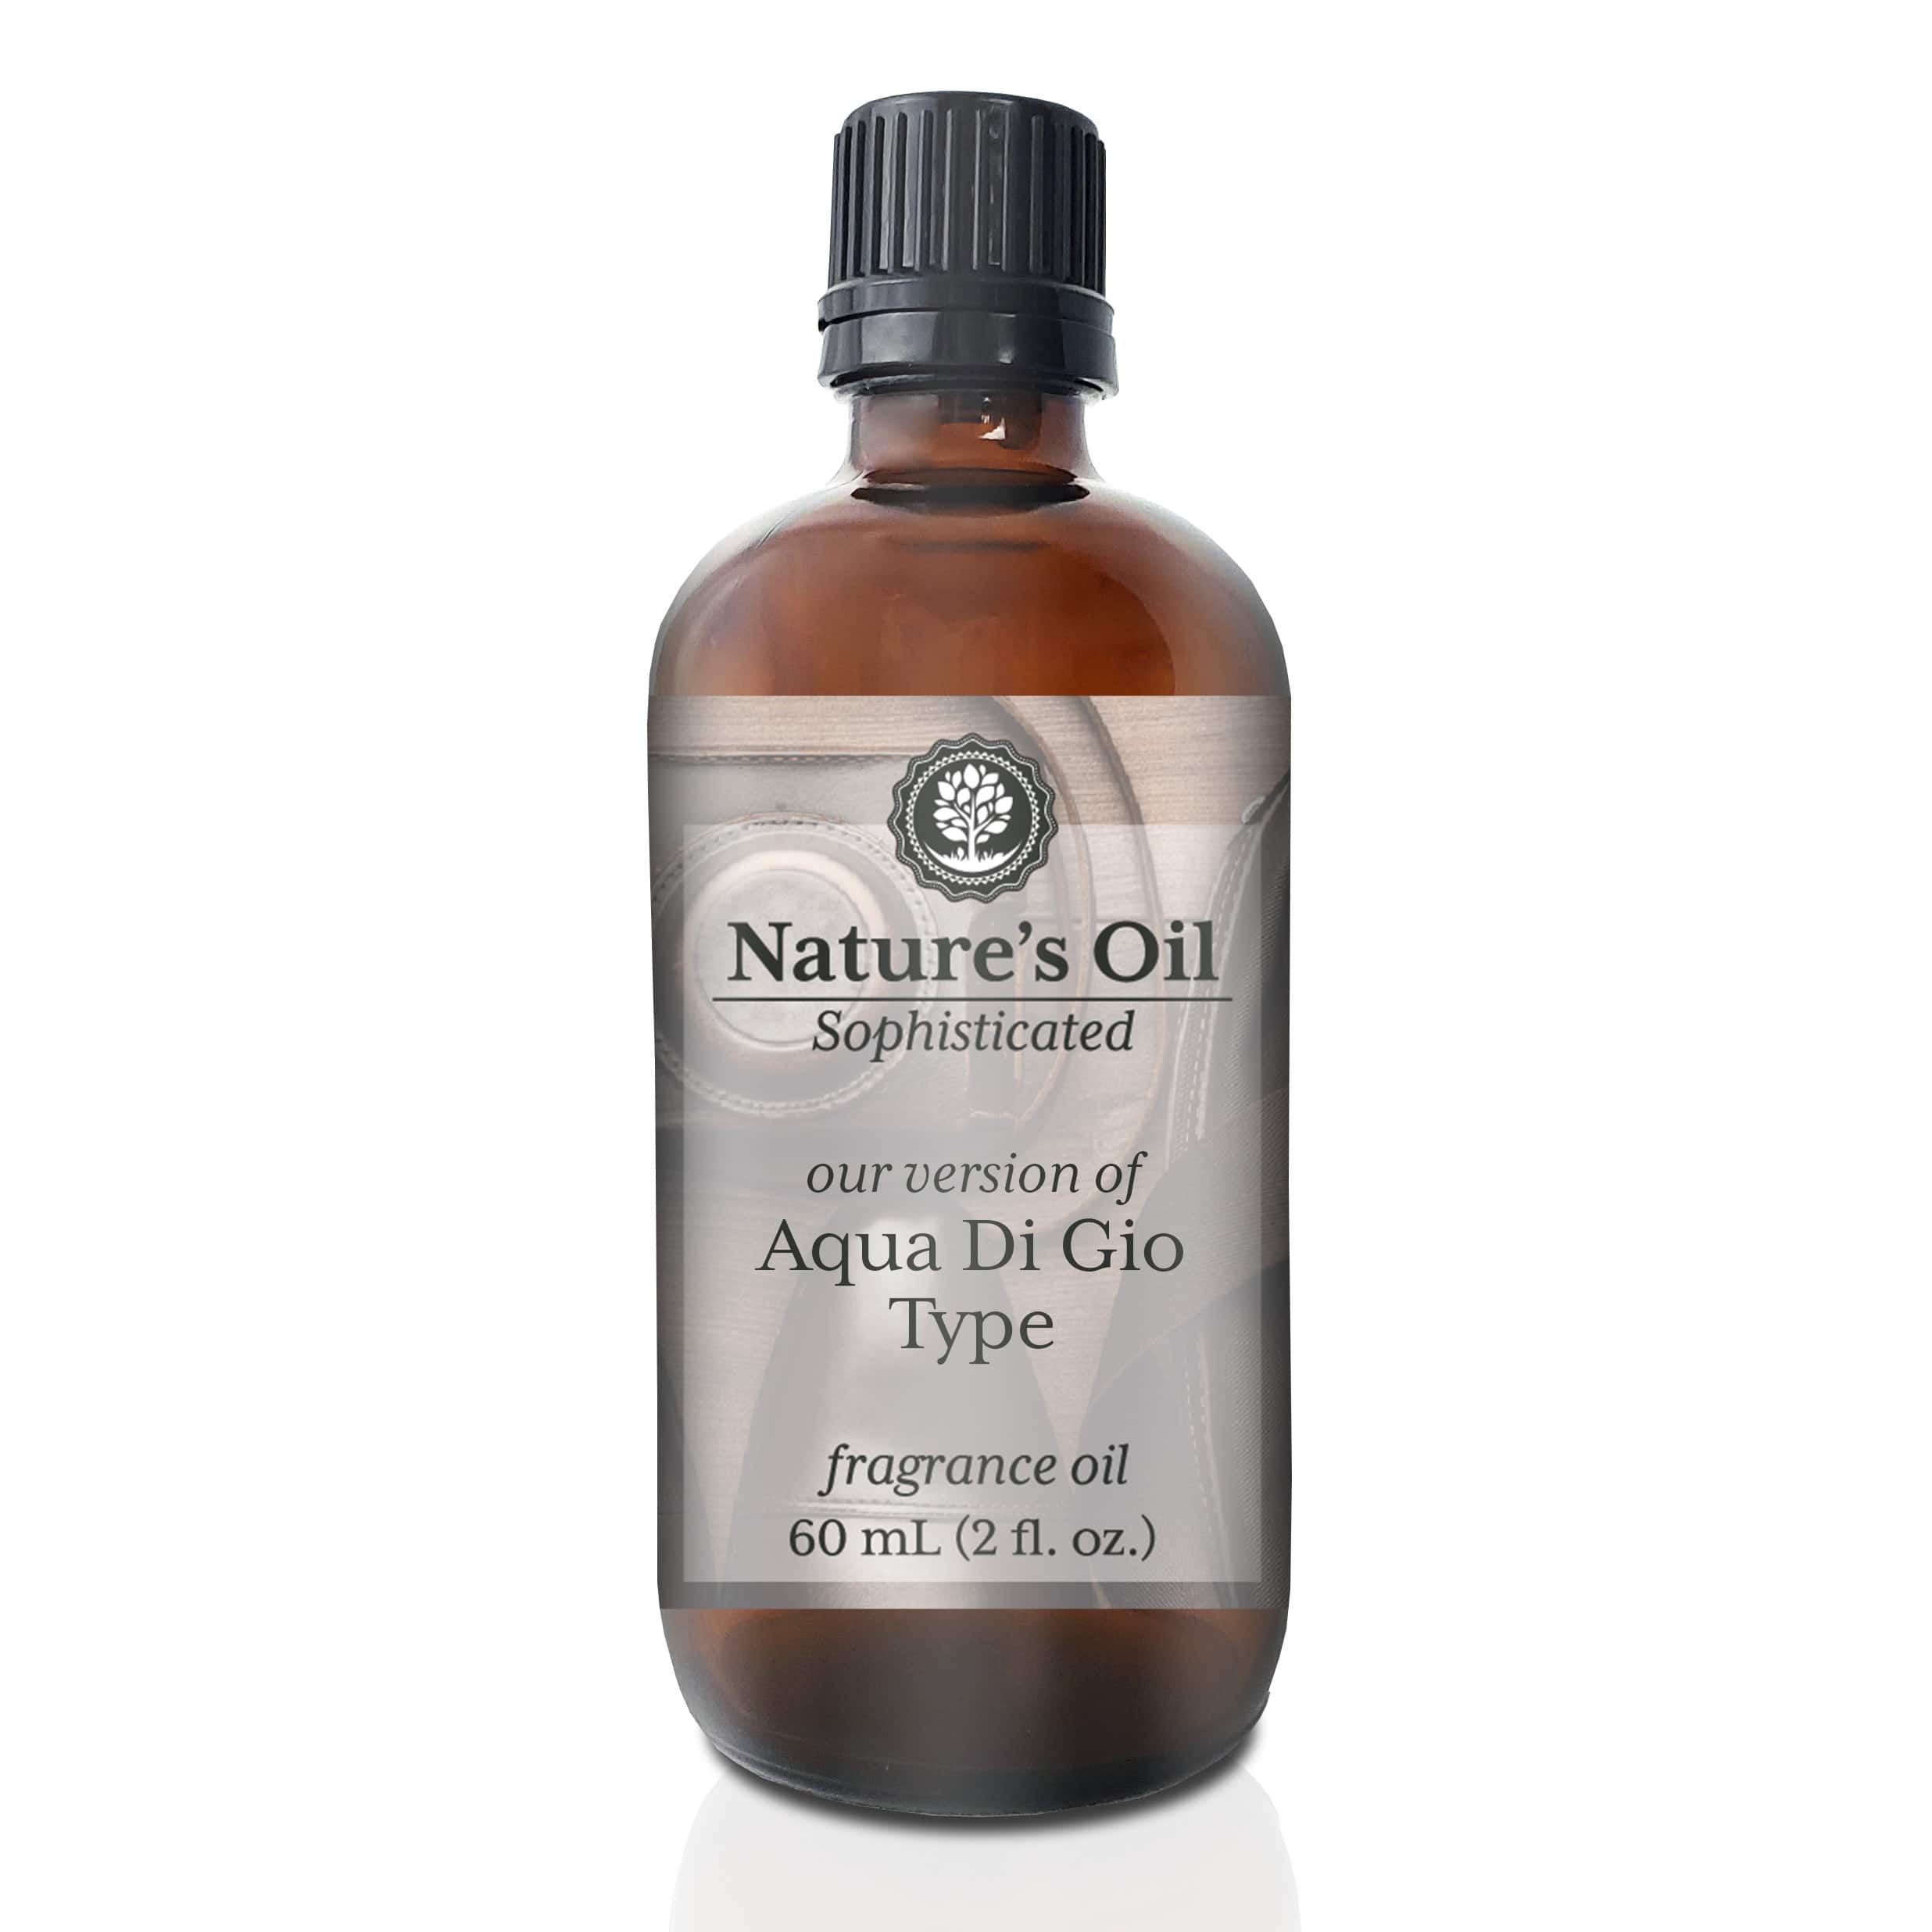 Nature&#x27;s Oil Aqua Di Gio (our version of) Fragrance Oil